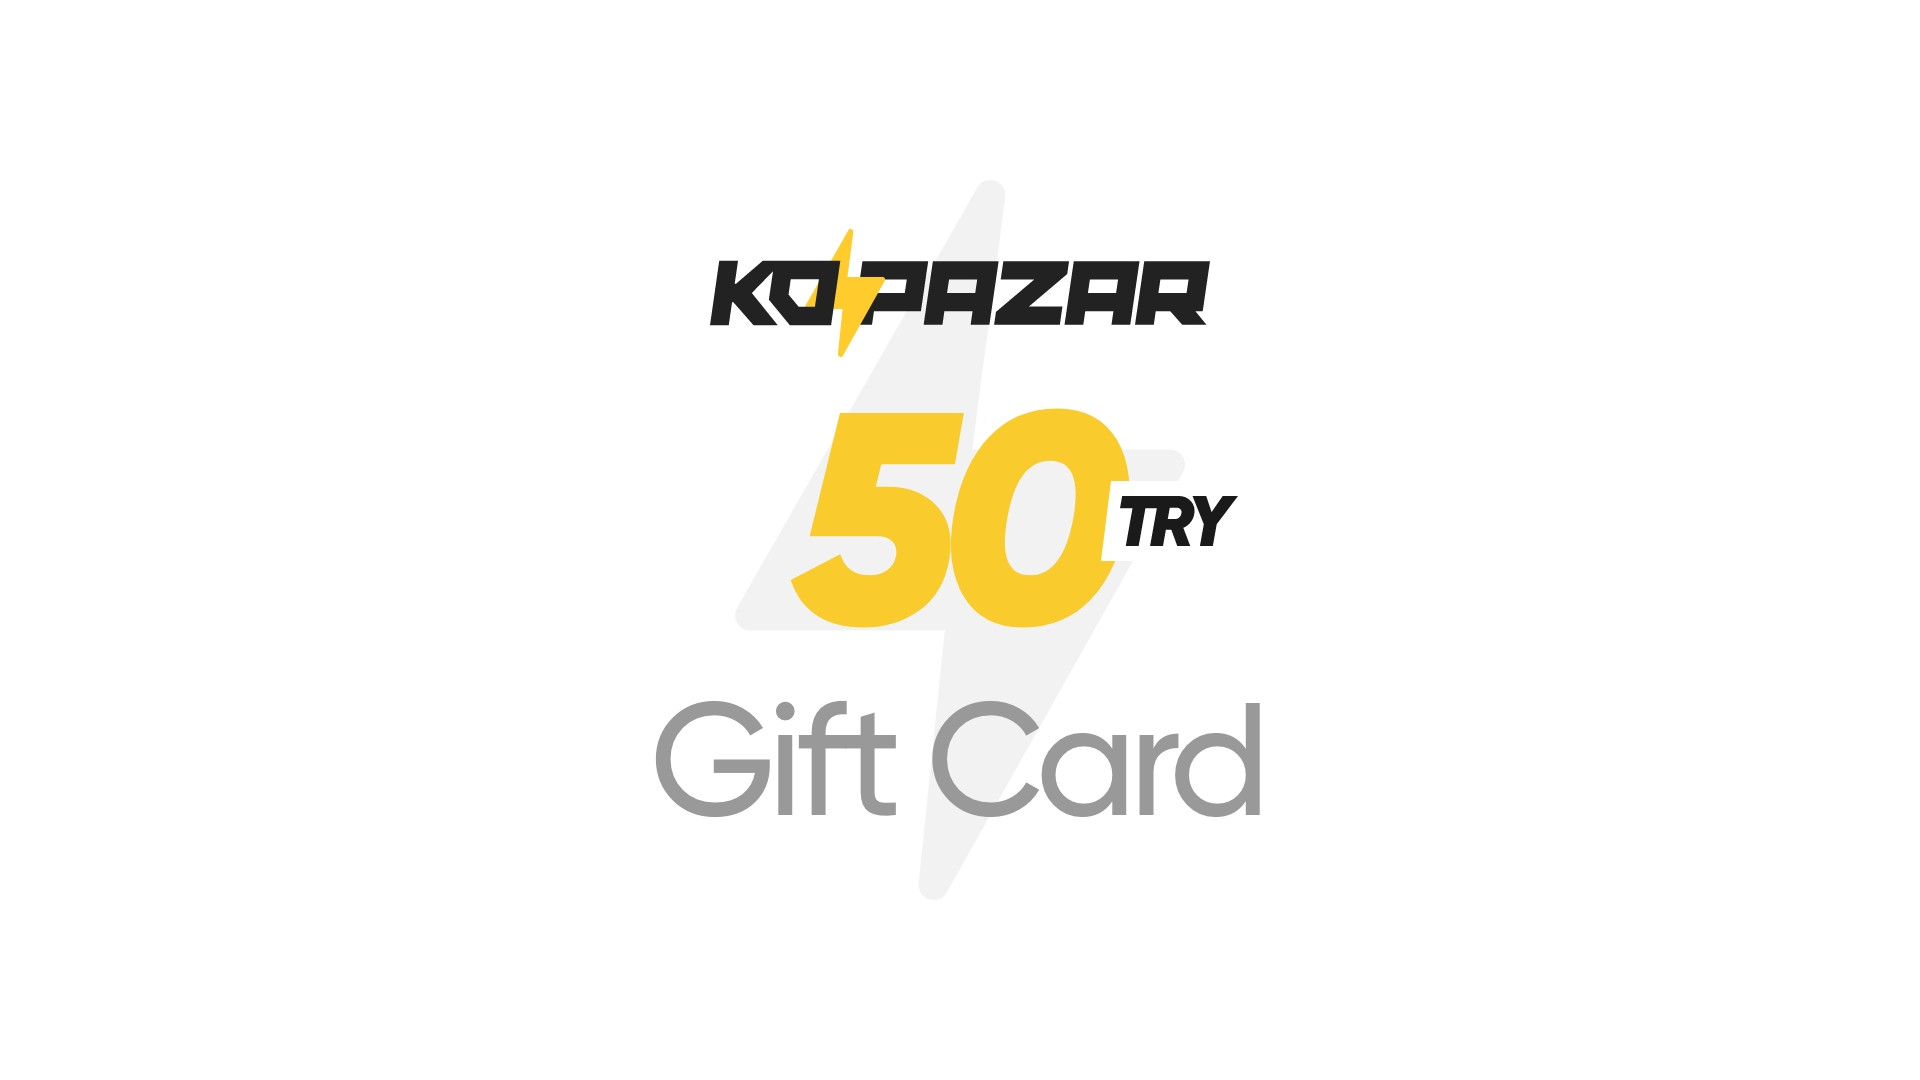 Kopazar 50 TRY Gift Card 2.09$